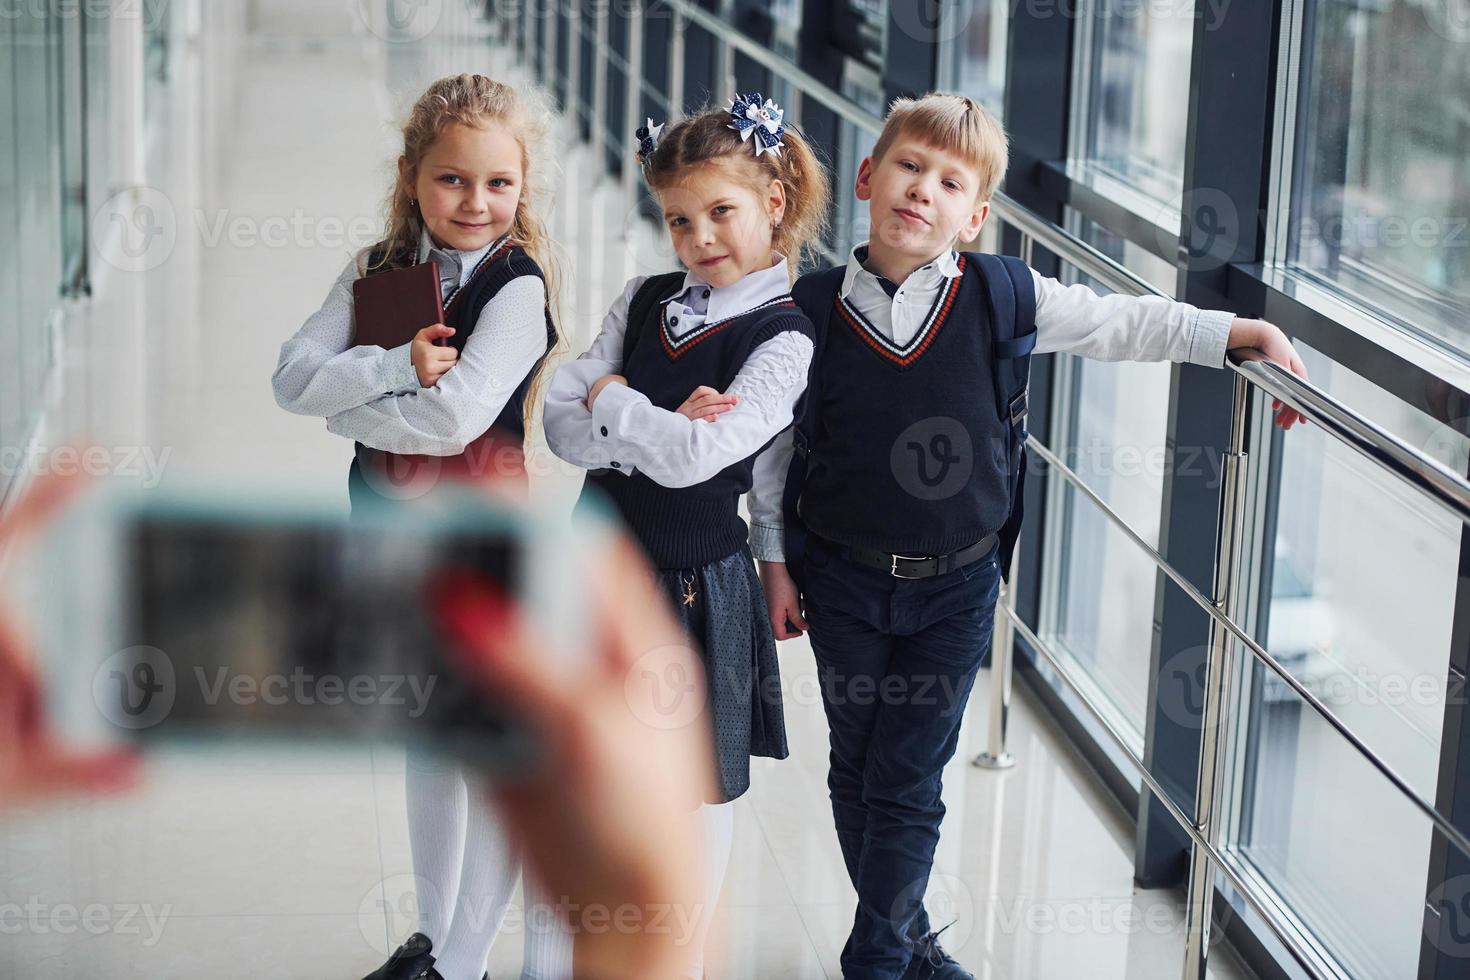 school- kinderen in uniform maken een foto samen in hal. opvatting van onderwijs